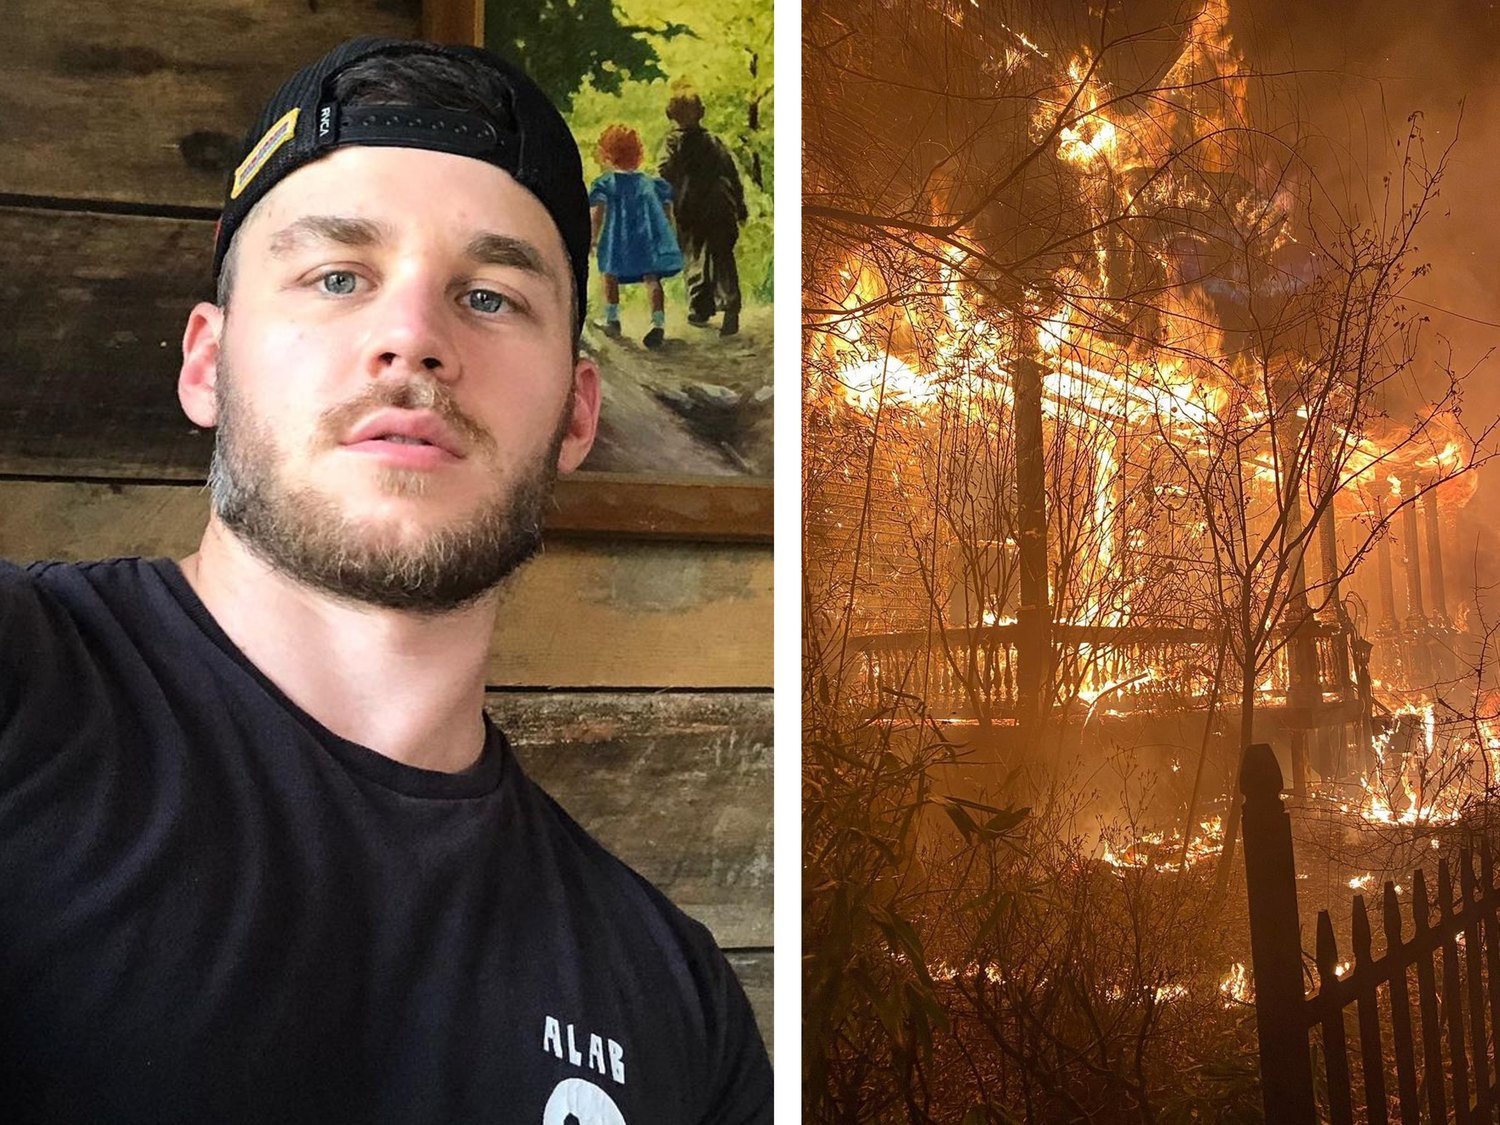 Incendian y destrozan la casa de Matthew Camp, estrella porno gay: "A la gente LGTBI se nos sigue atacando"